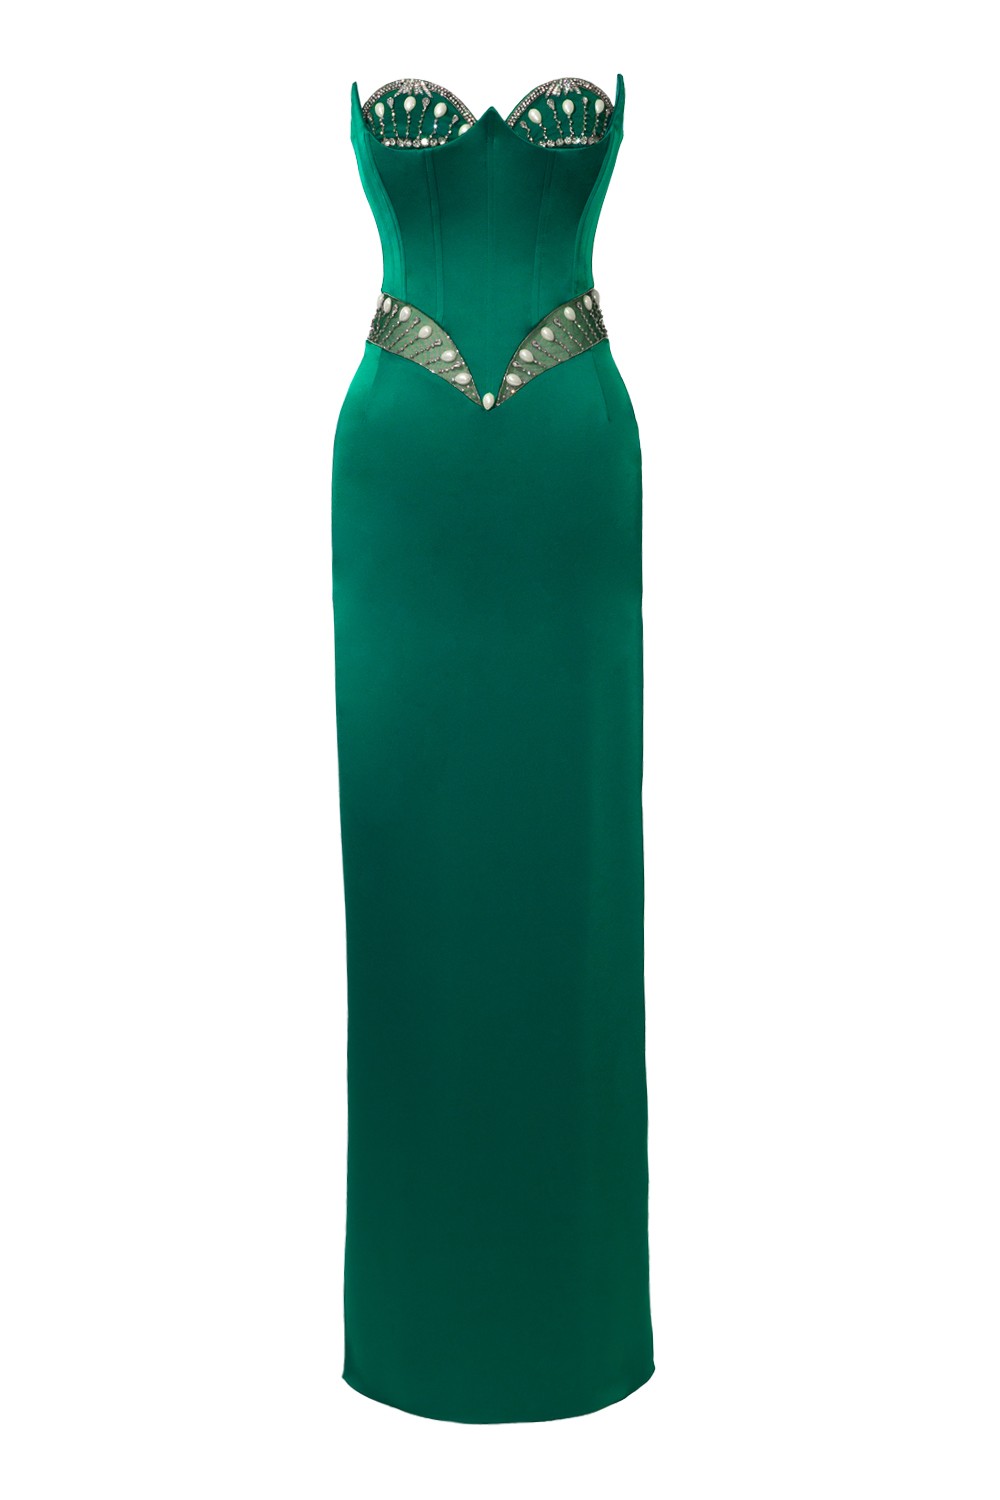 Venus Long Dress - Emerald Green